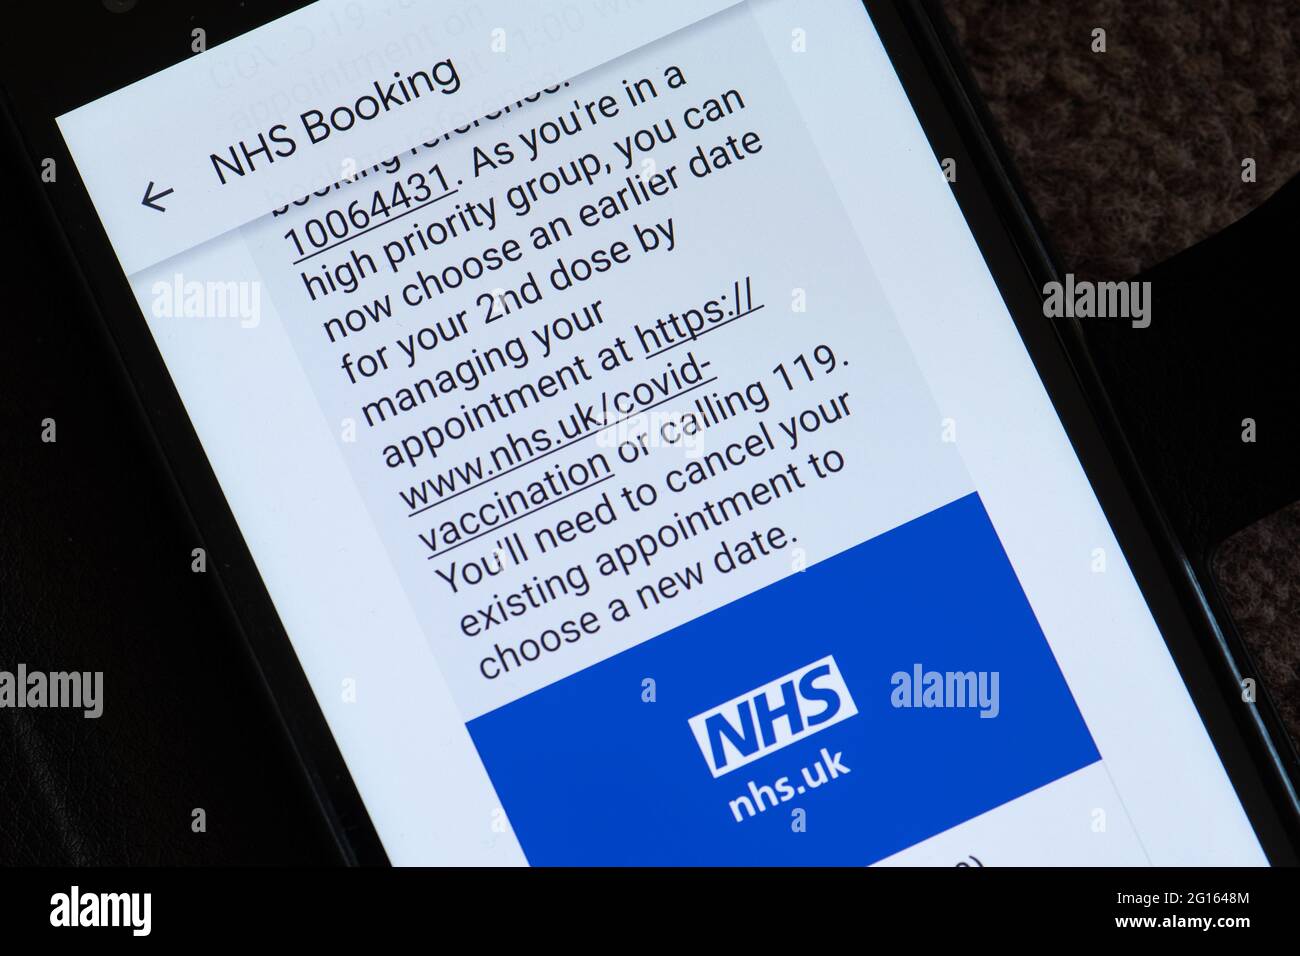 Mensaje de texto del NHS que aconseja reservar una cita previa para la vacunación covid de 2nd como en el grupo de alta prioridad (mayores de 50 años), Reino Unido, junio de 2021 Foto de stock